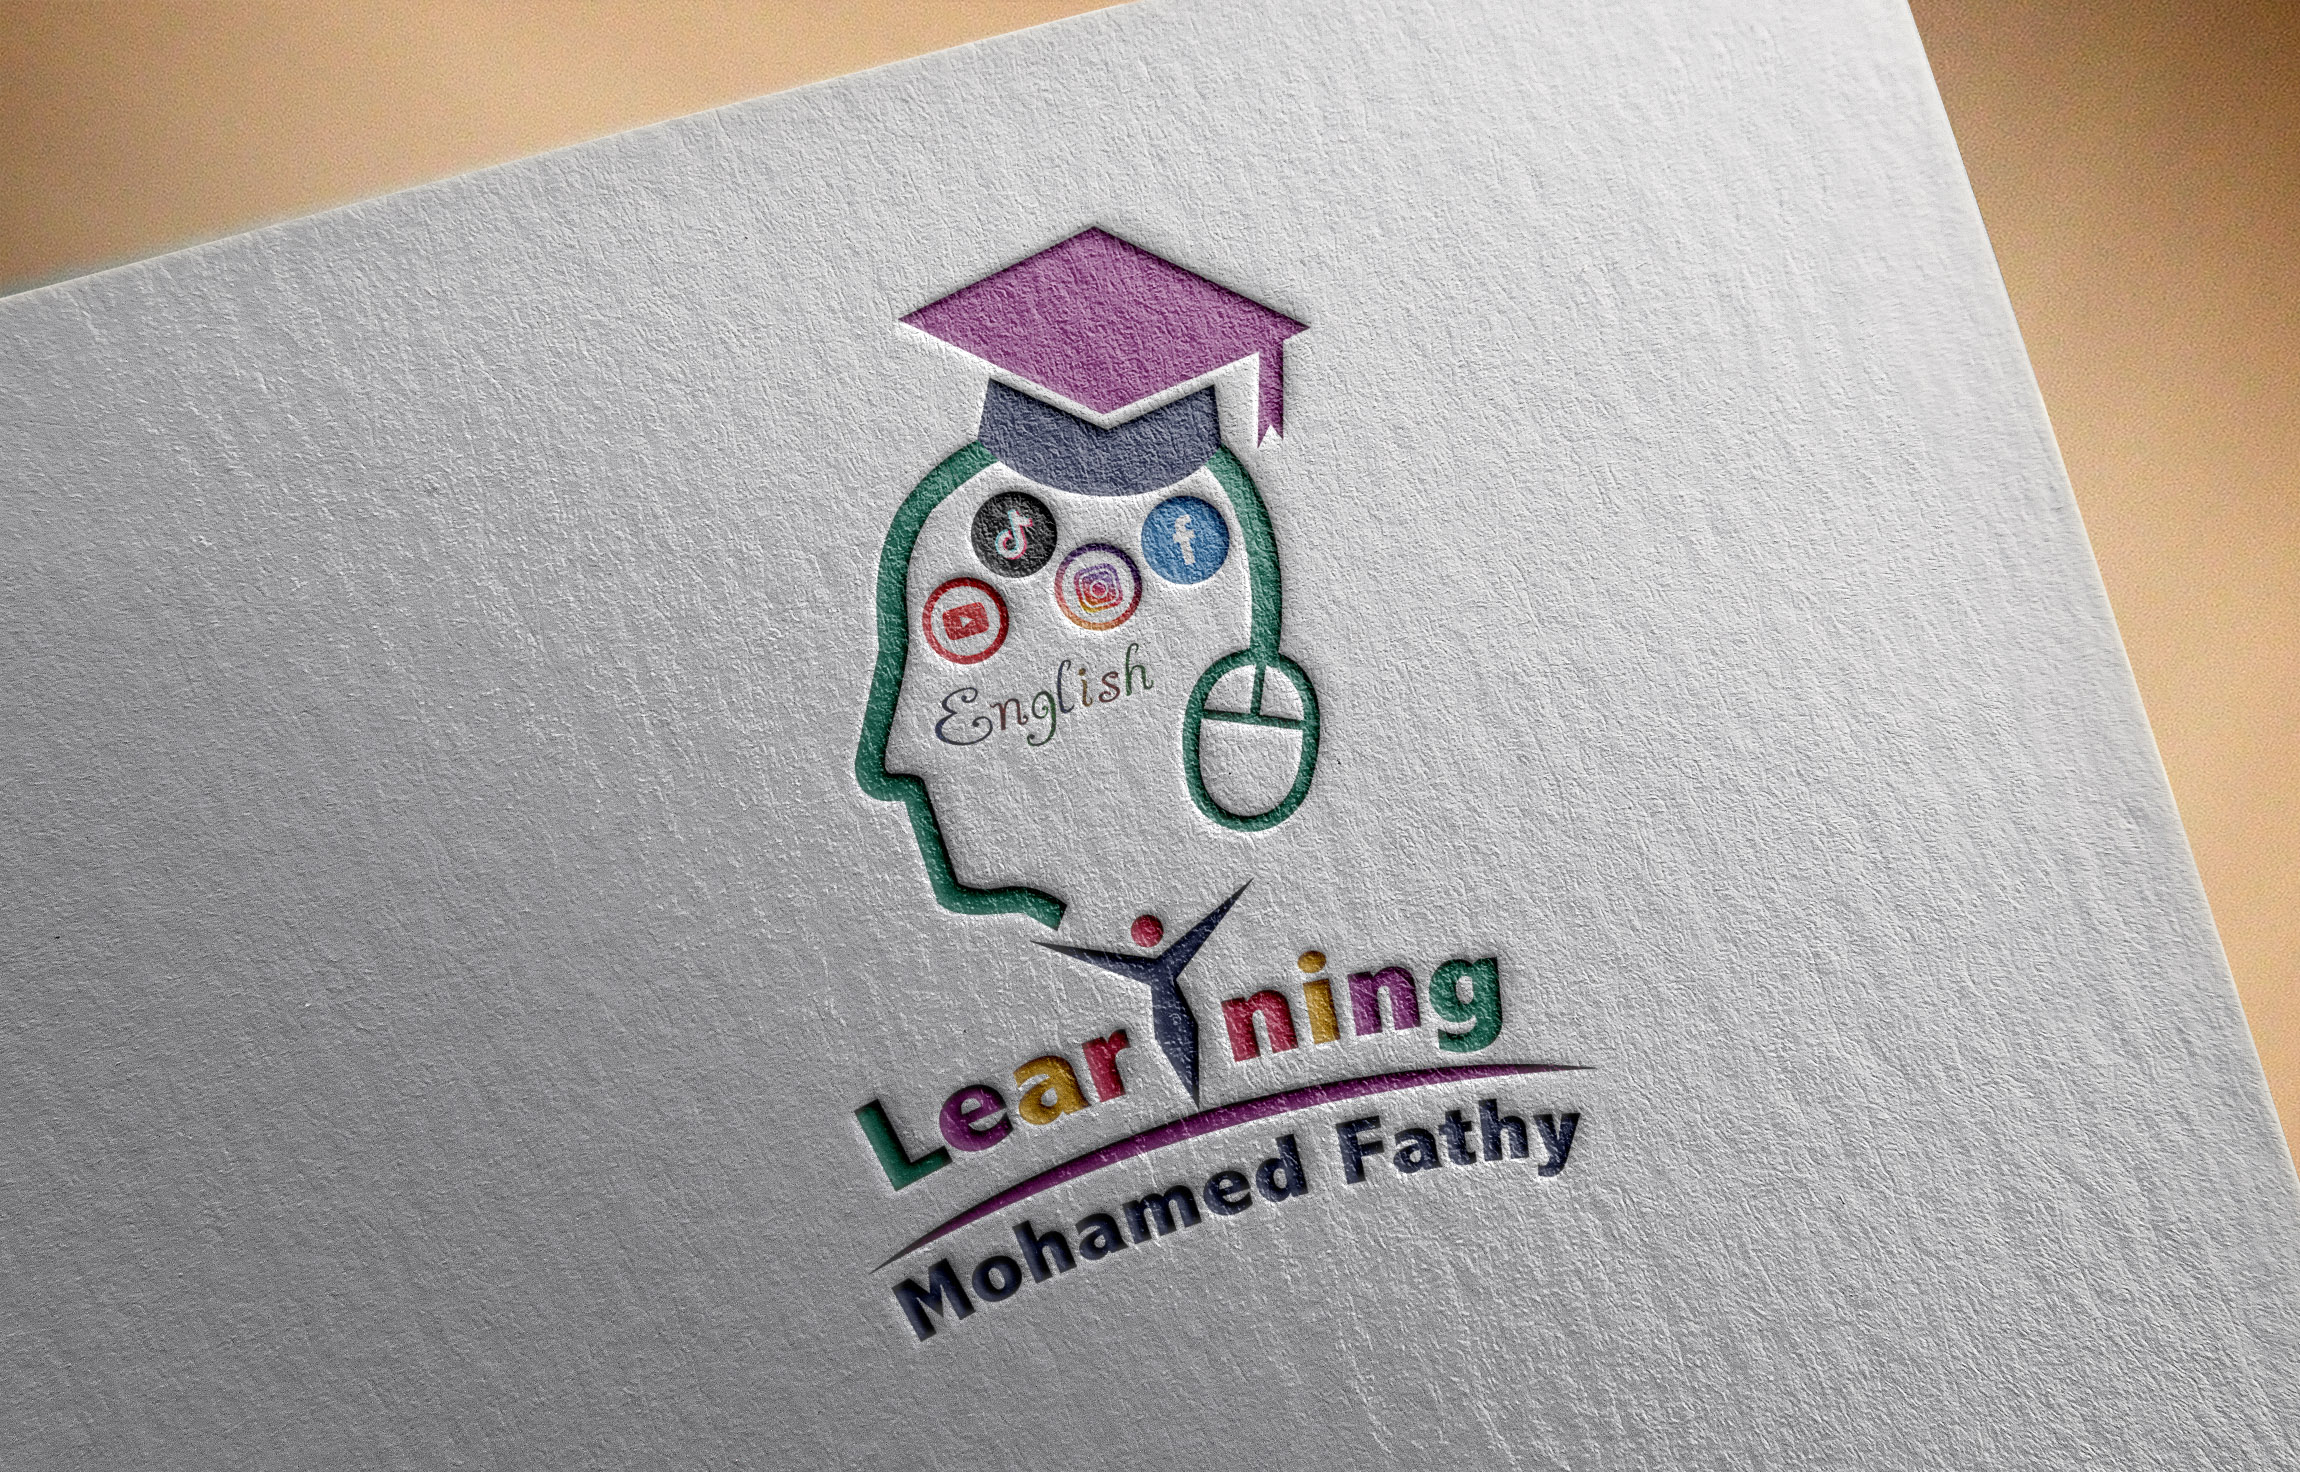 موكاب تصميم شعار لوجو قناة يوتيوب محمد فتحي لتعليم الإنجليزية وتطوير الذات والتطبيقات ومواقع الويب 2